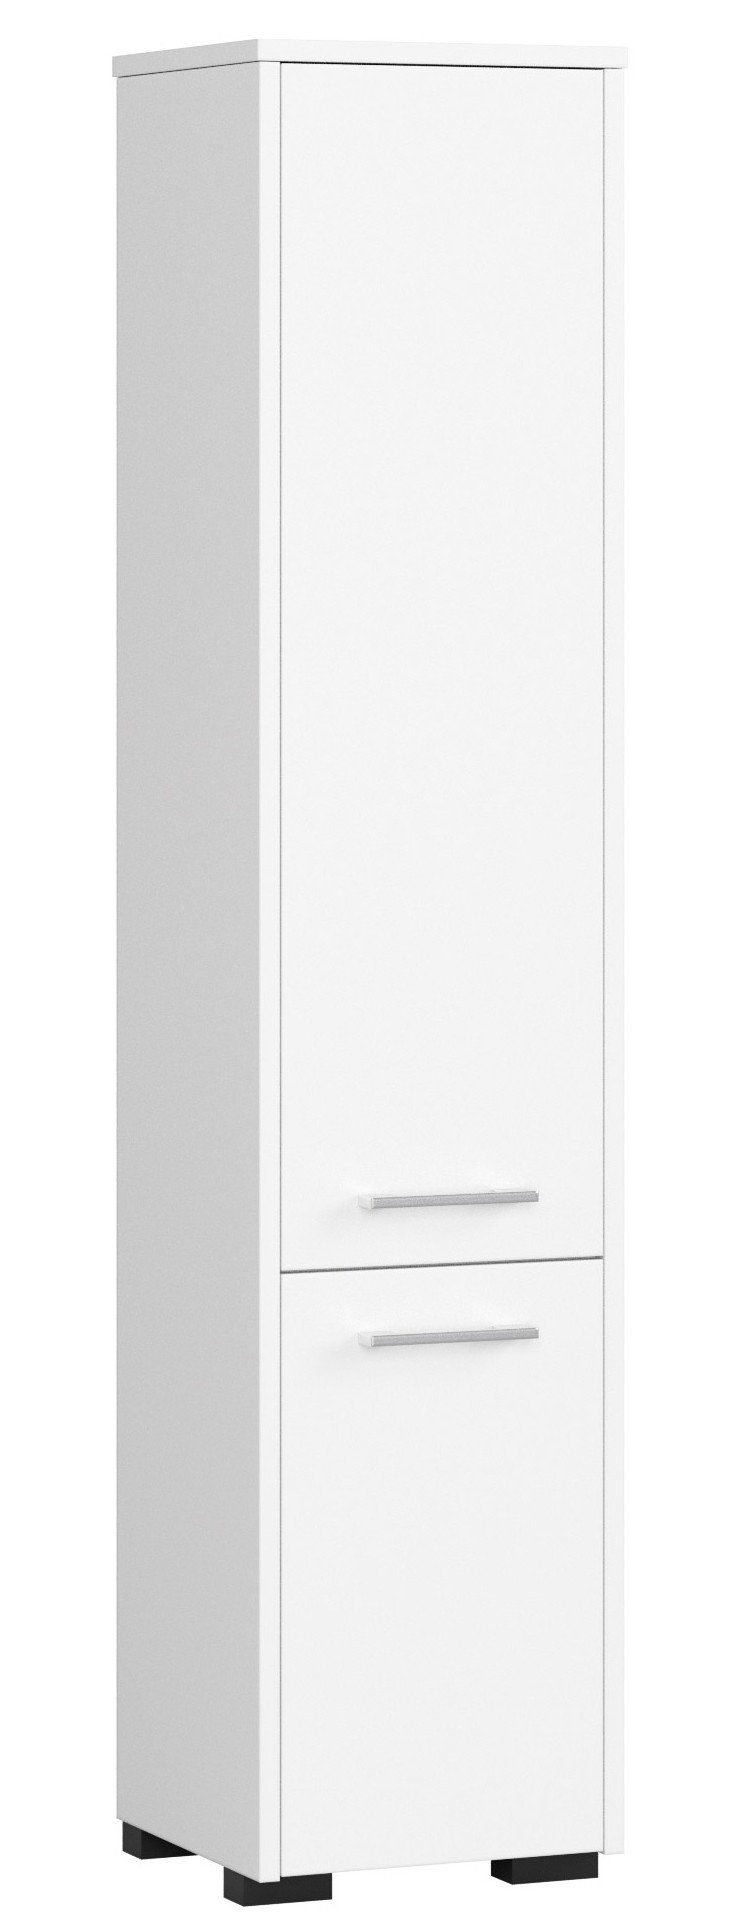 Home Collective Badregal Badezimmerschrank, mit 2 Türen und 4 Einlegeböden, 30 x 30 x 140 cm, aus 16 mm starker, abriebfester Laminatplatte, Weiß